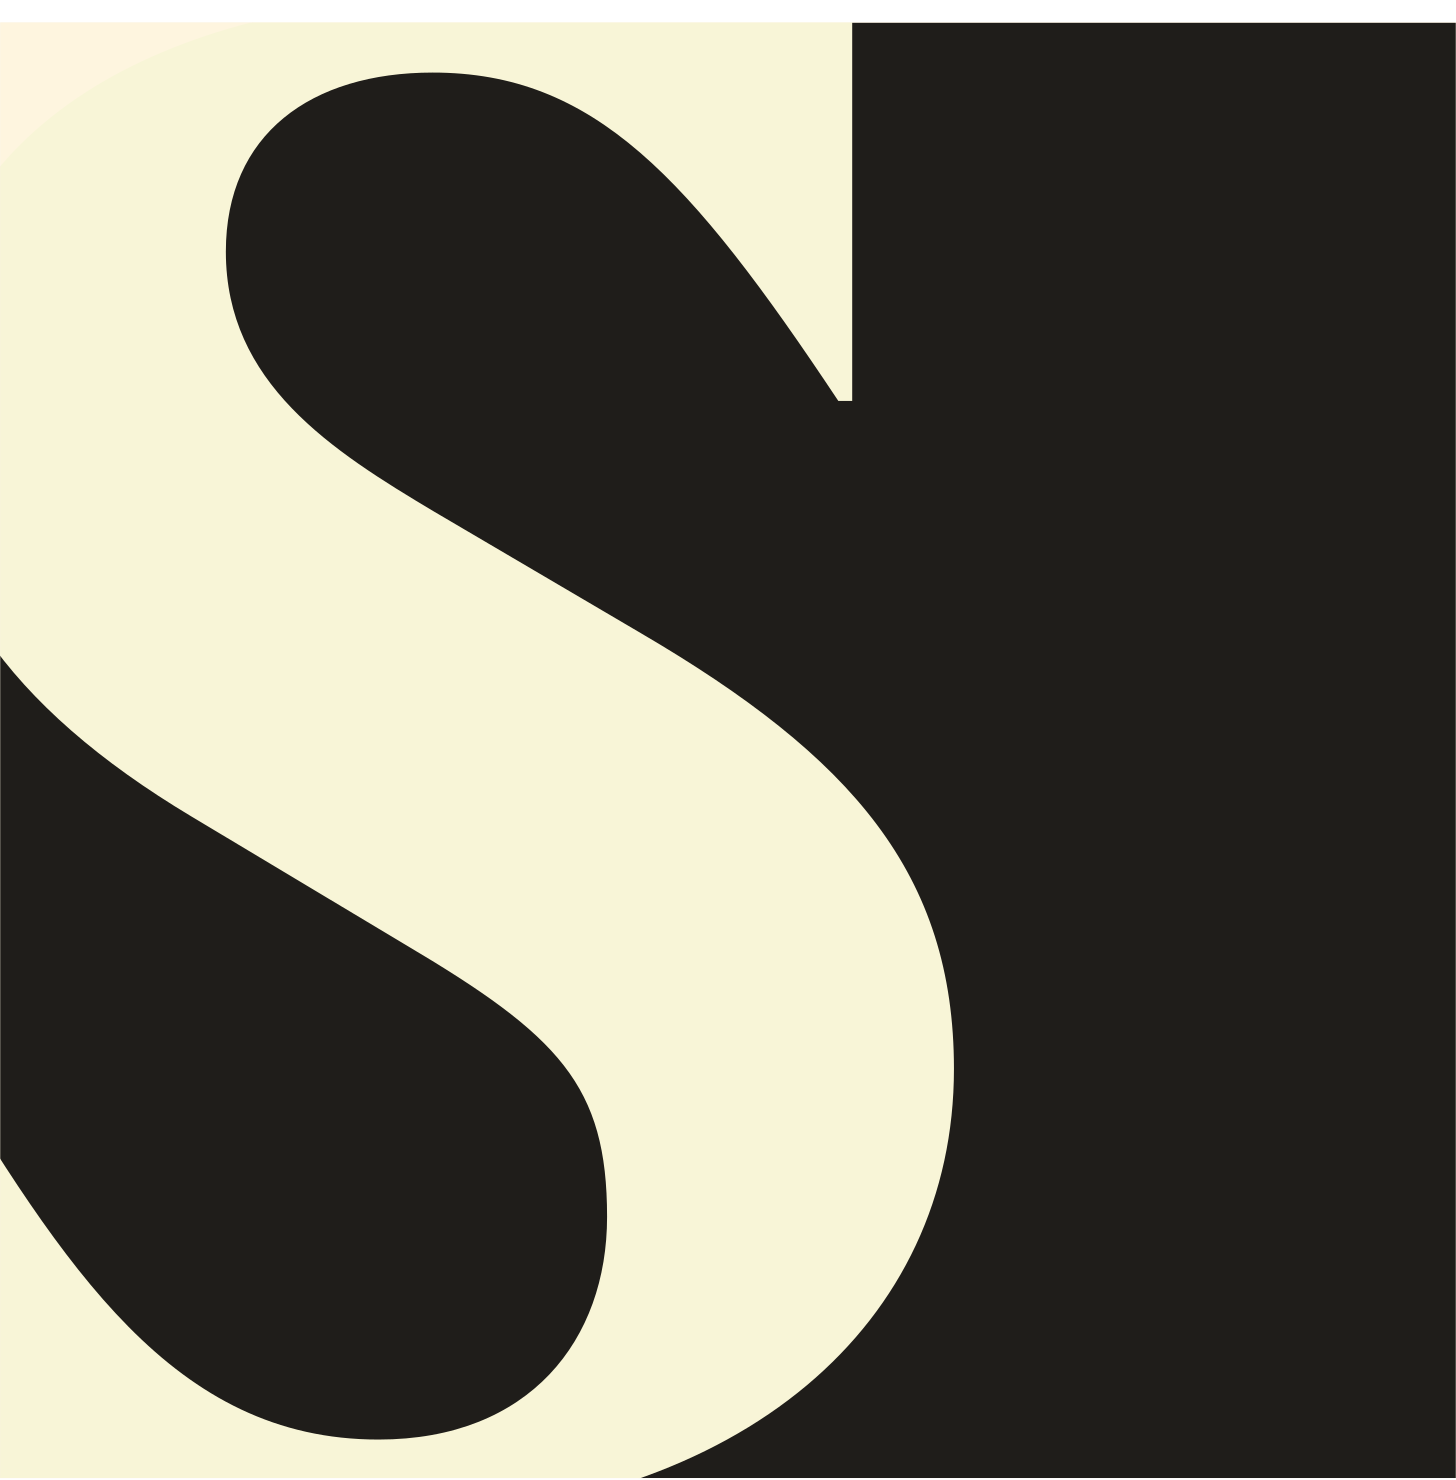 Semafor Logo